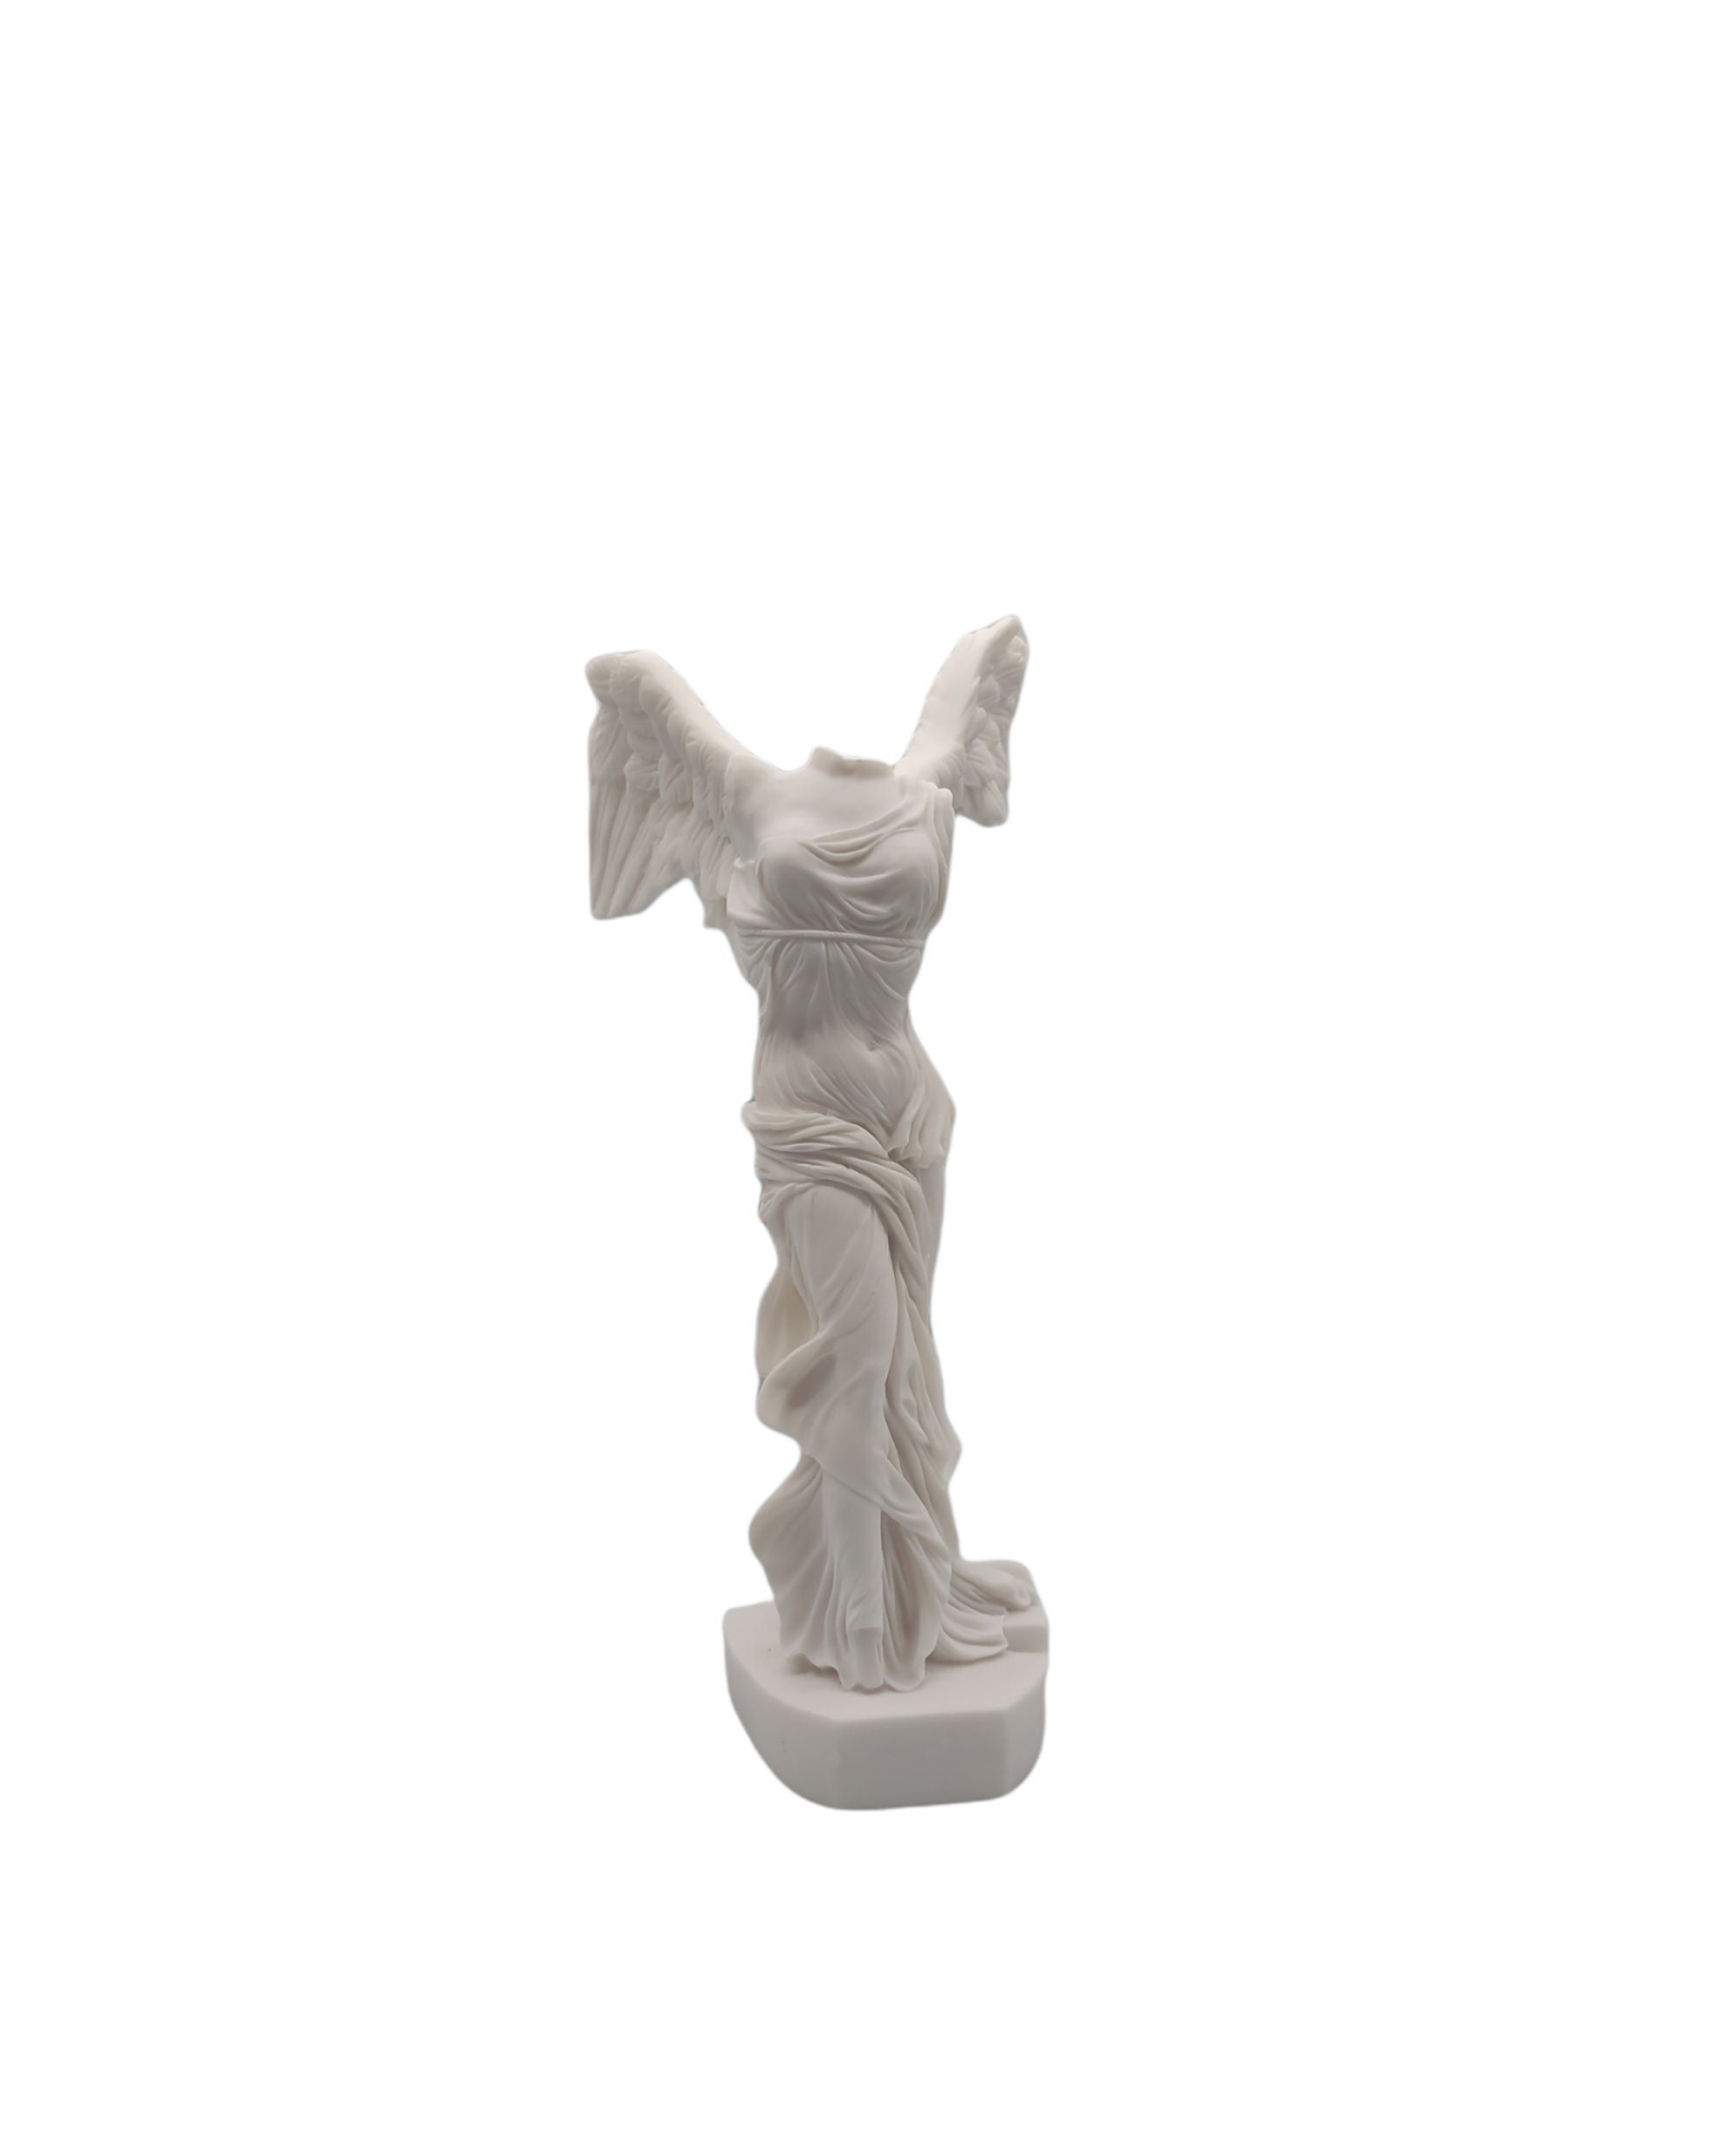 Winged Victory Nike of Samothrace Greek Goddess Statue Etsy UK